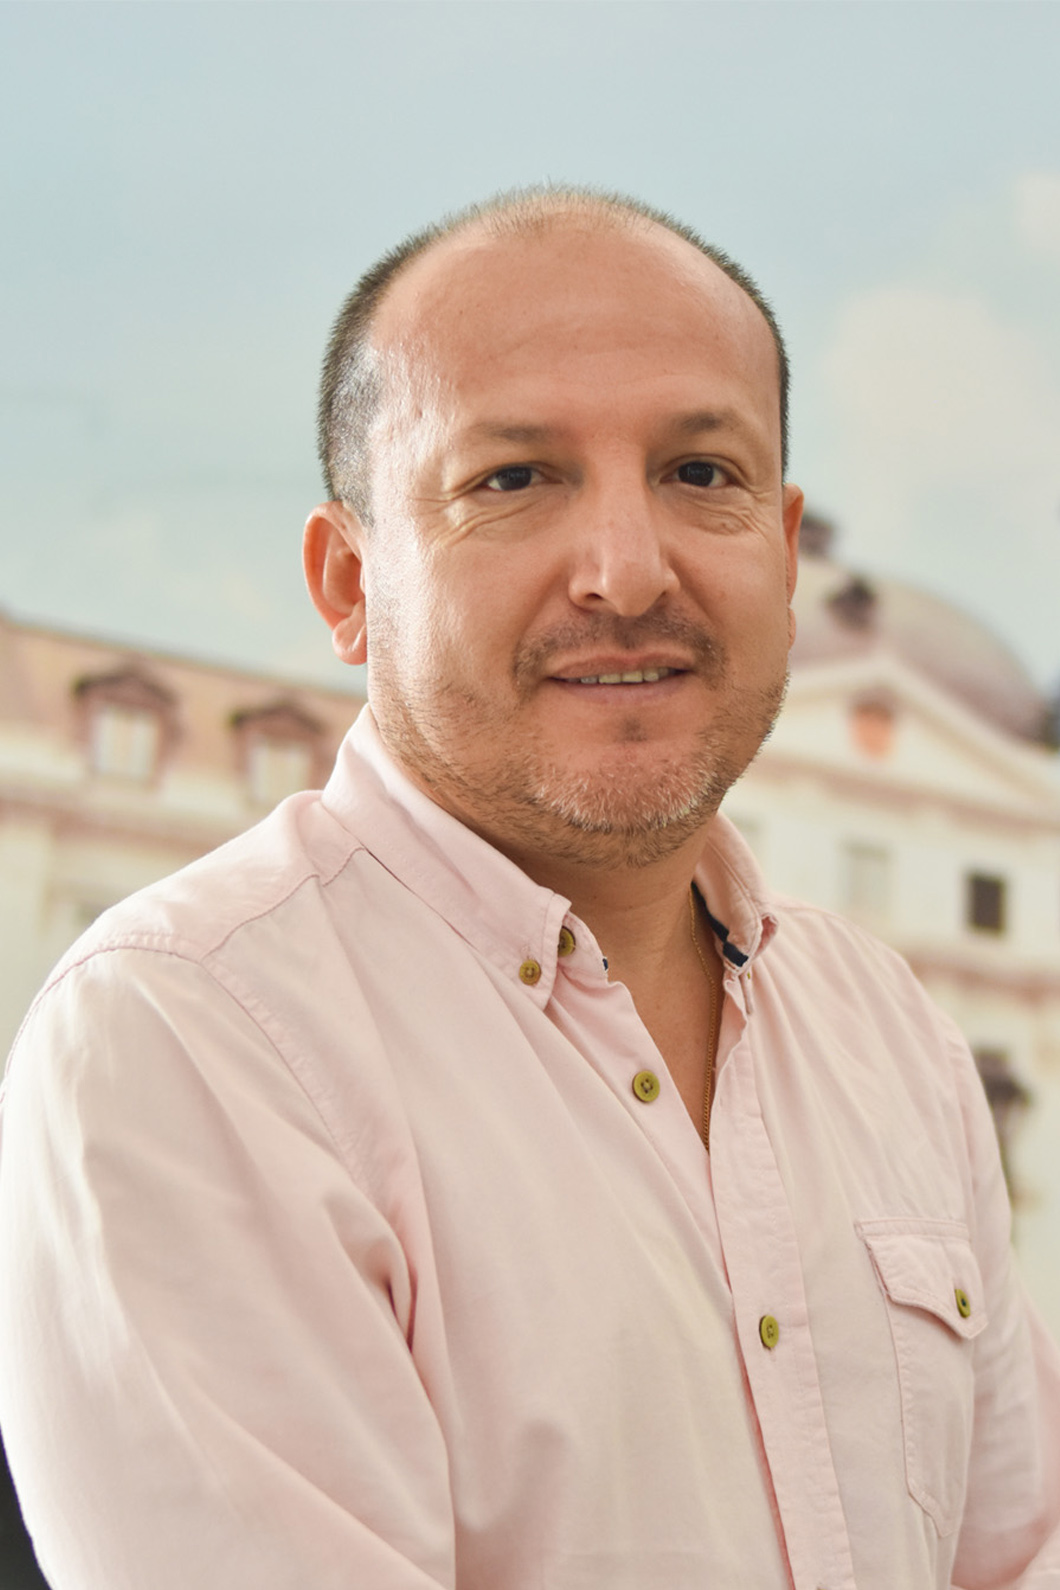 Foto de Tito Garzón, jefe de Control de la Operación. Se encuentra de perfil sonriendo.